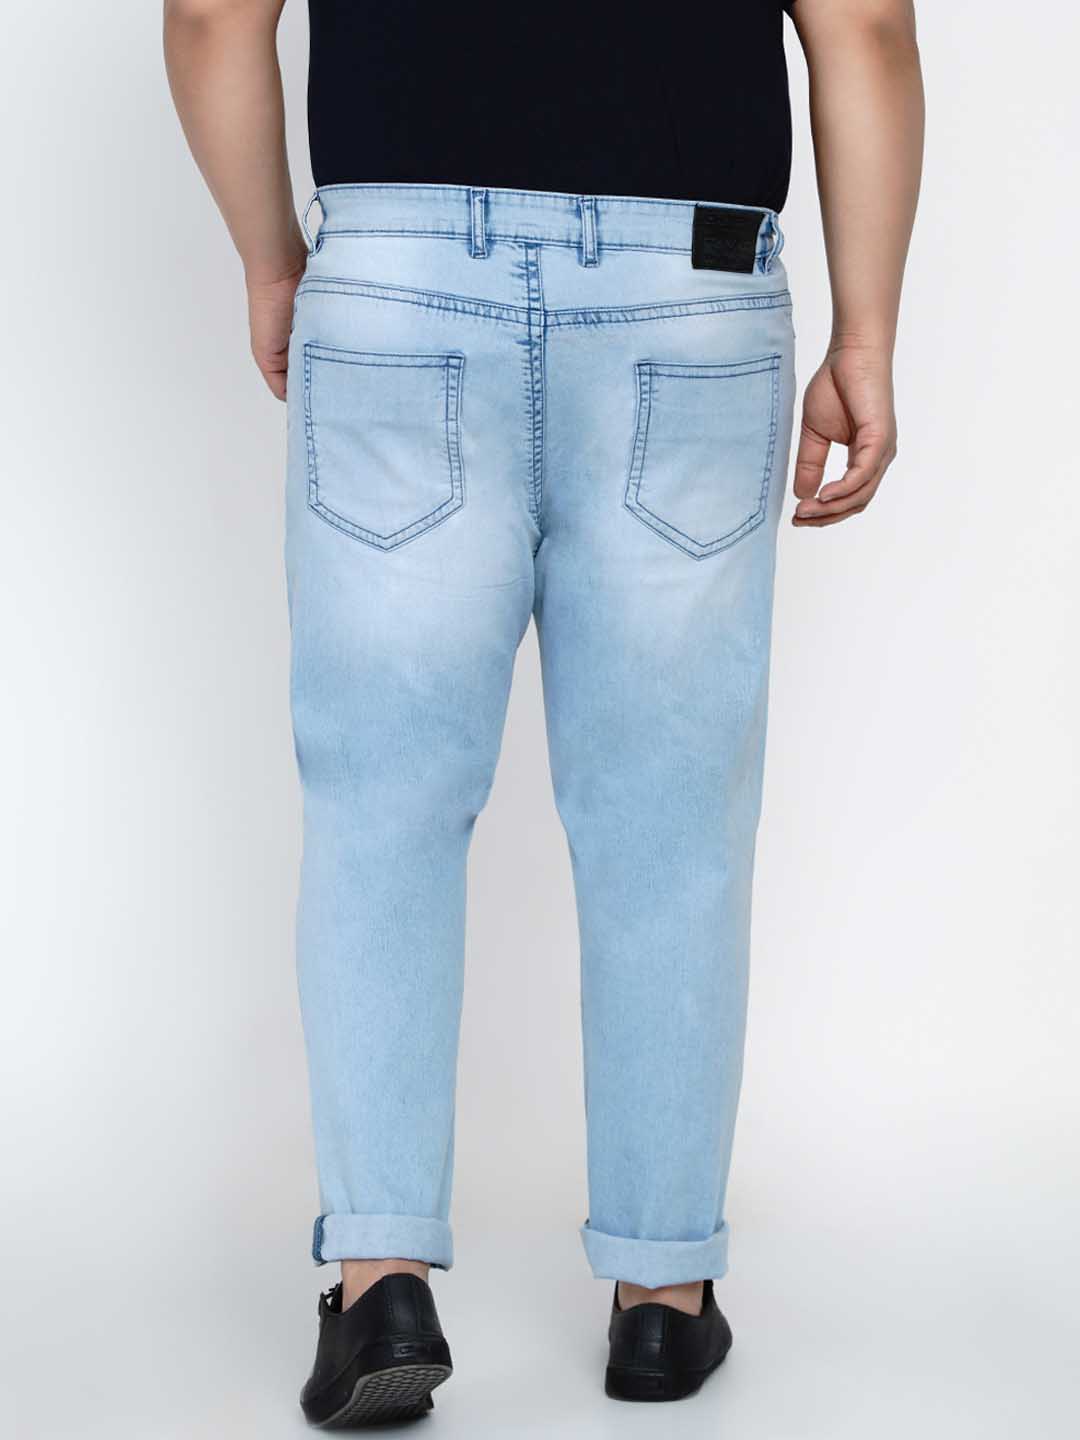 bottomwear/jeans/JPJ12137/jpj12137-5.jpg